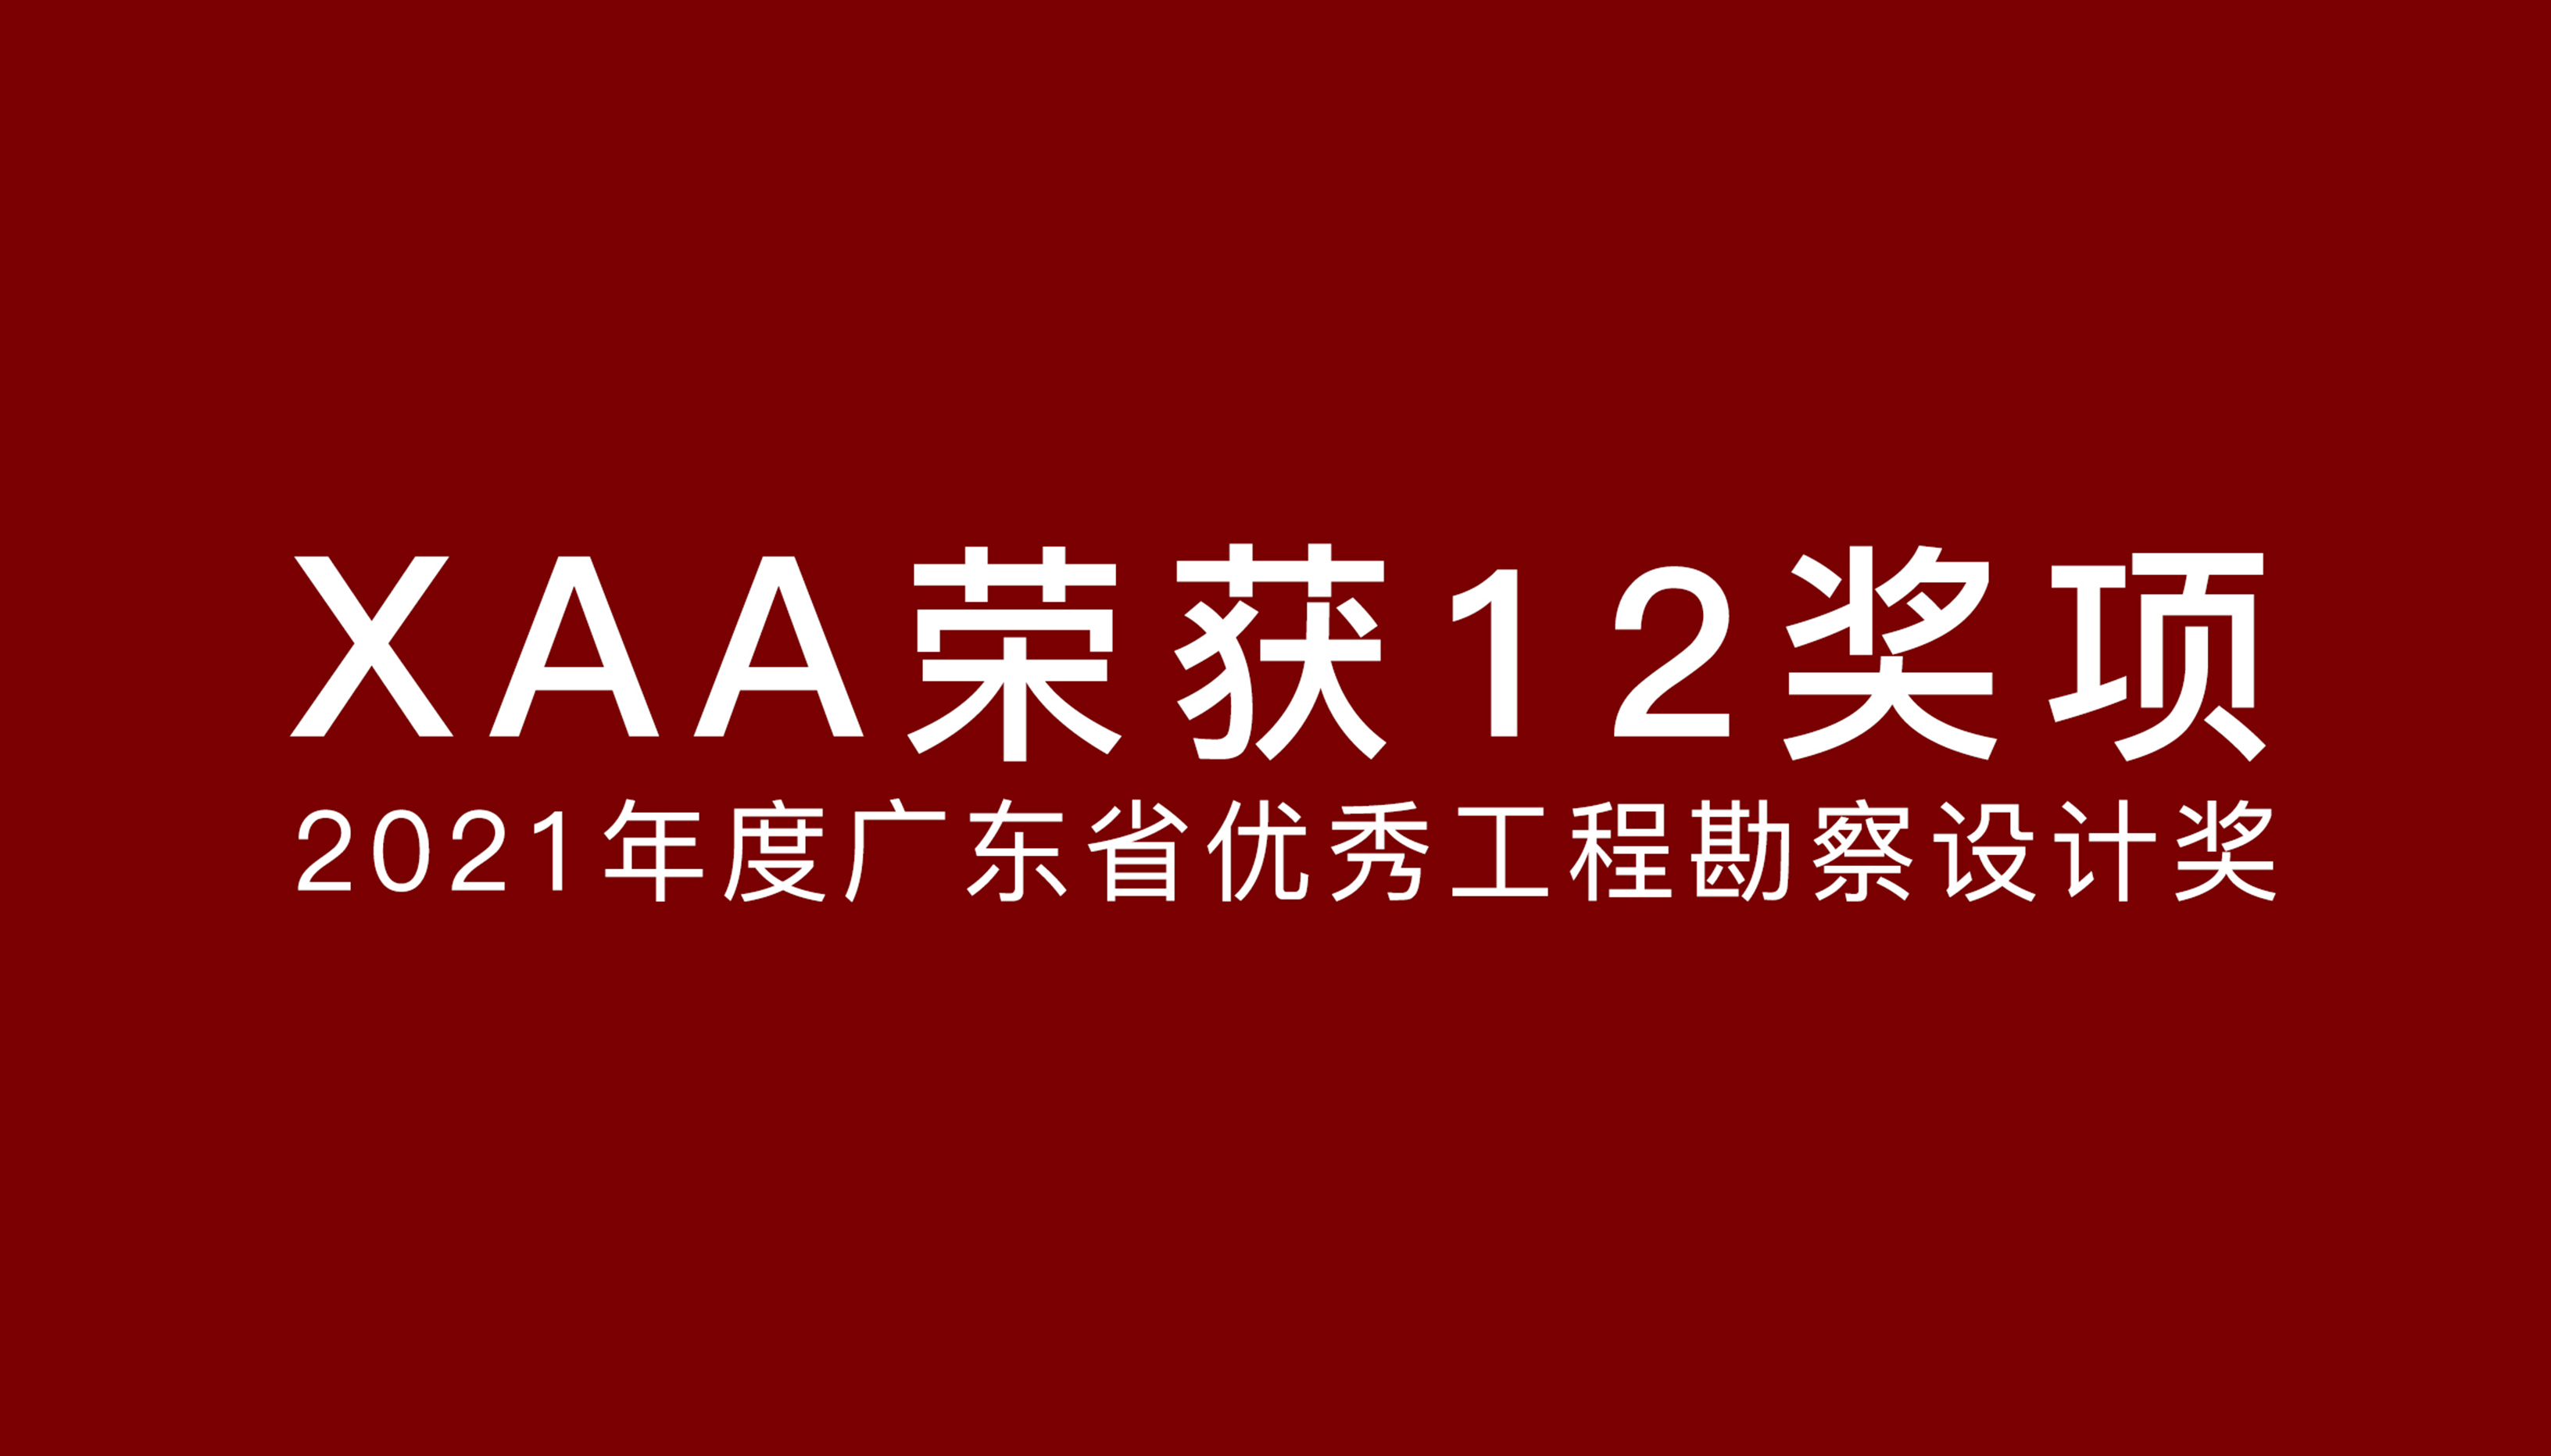 XAA获奖 | 12项目获2021广东省优秀工程勘察设计奖